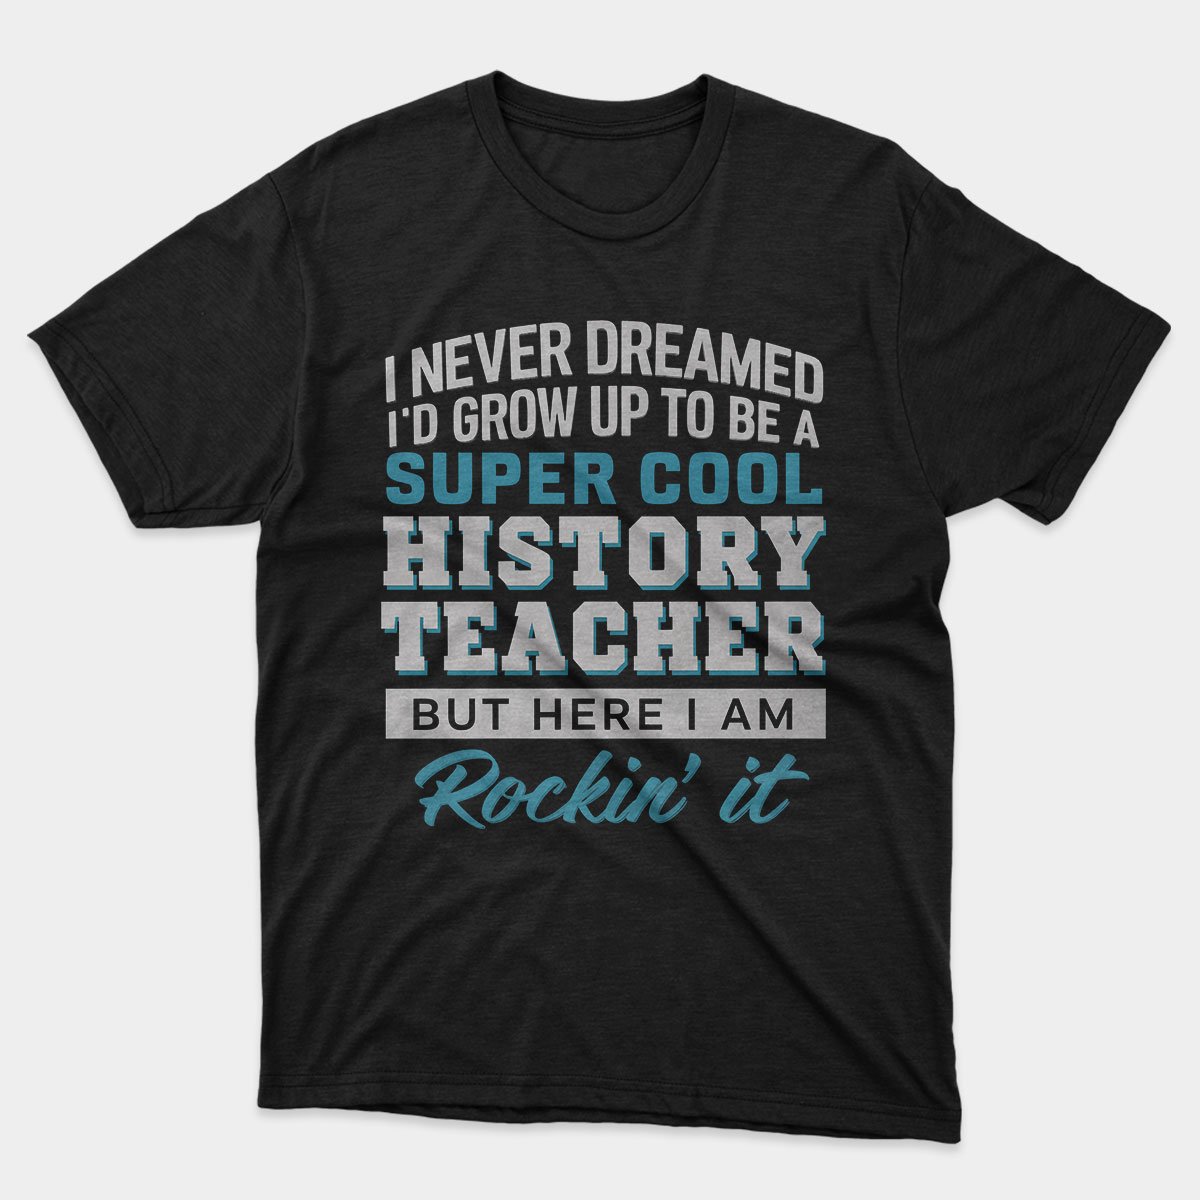 History Teacher's T-shirt